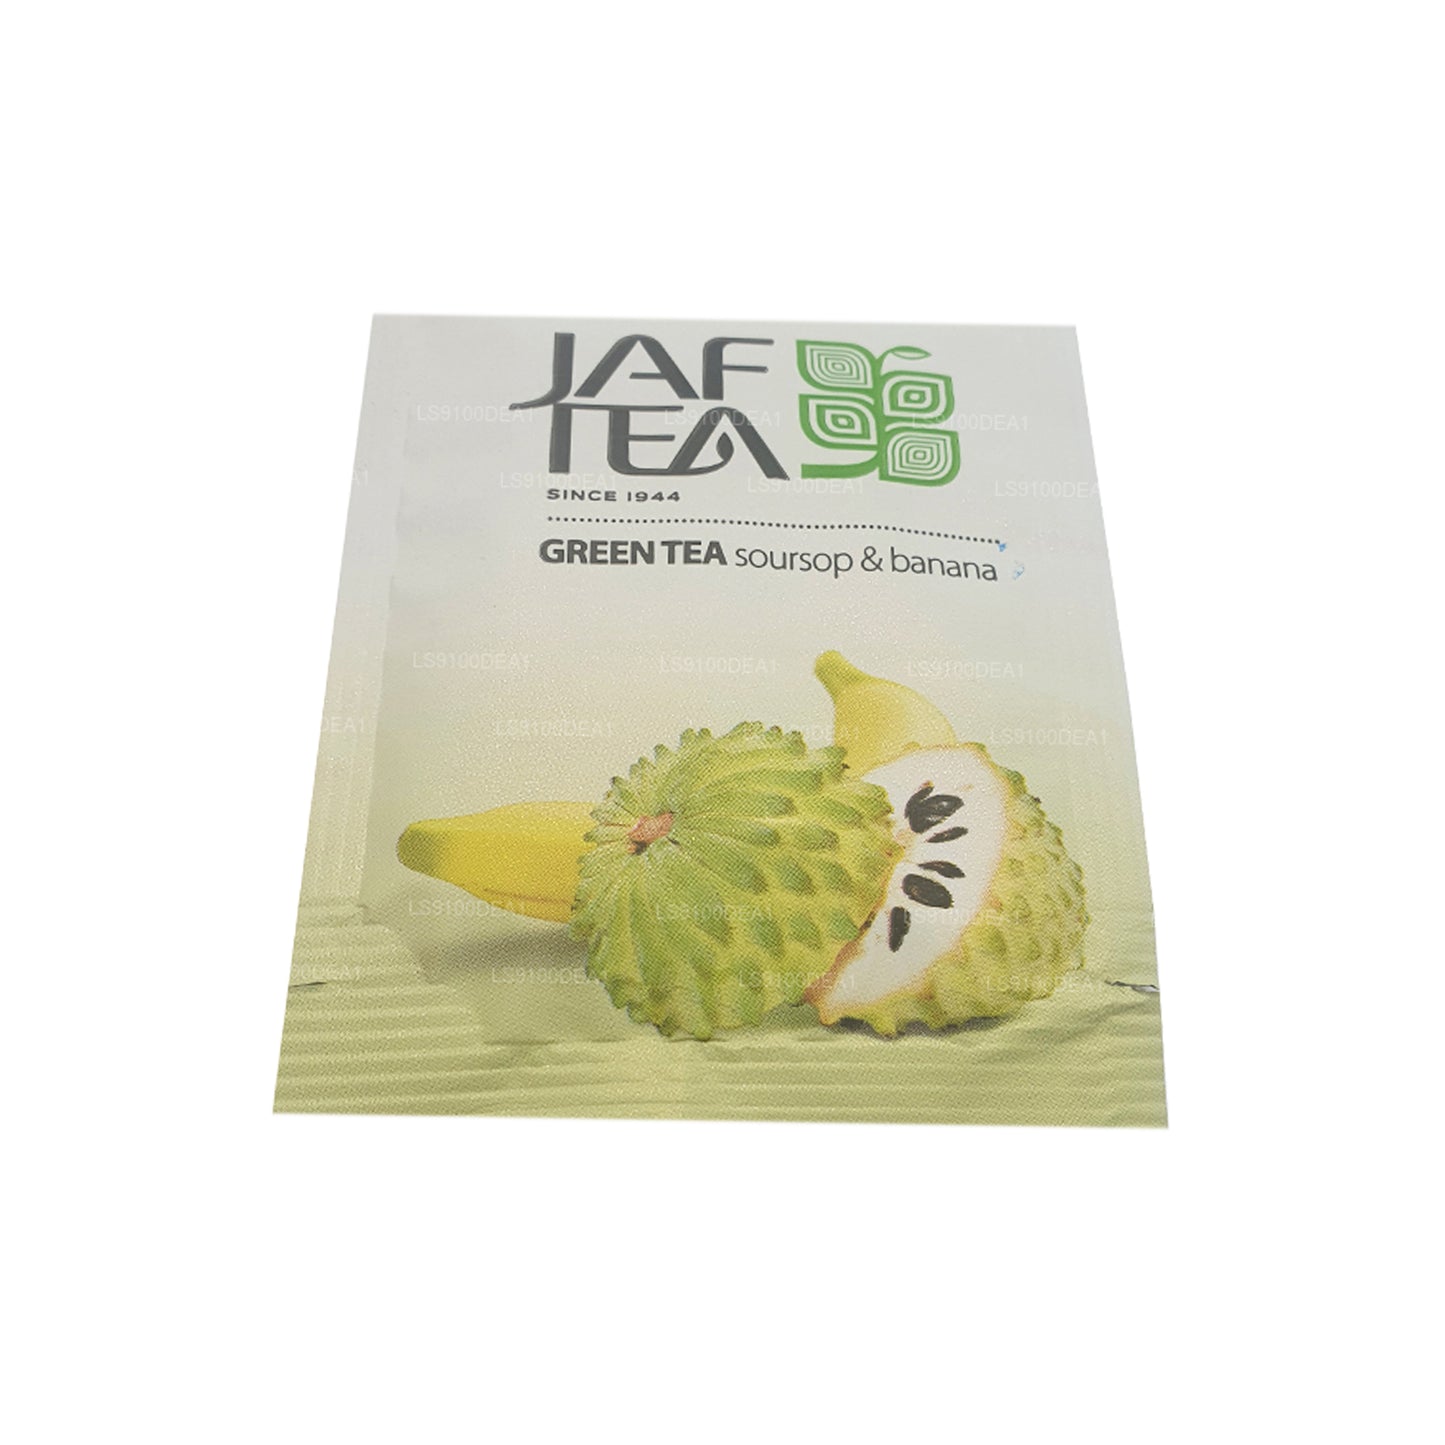 Colección Jaf Tea Pure Green (160 g) 80 bolsitas de té